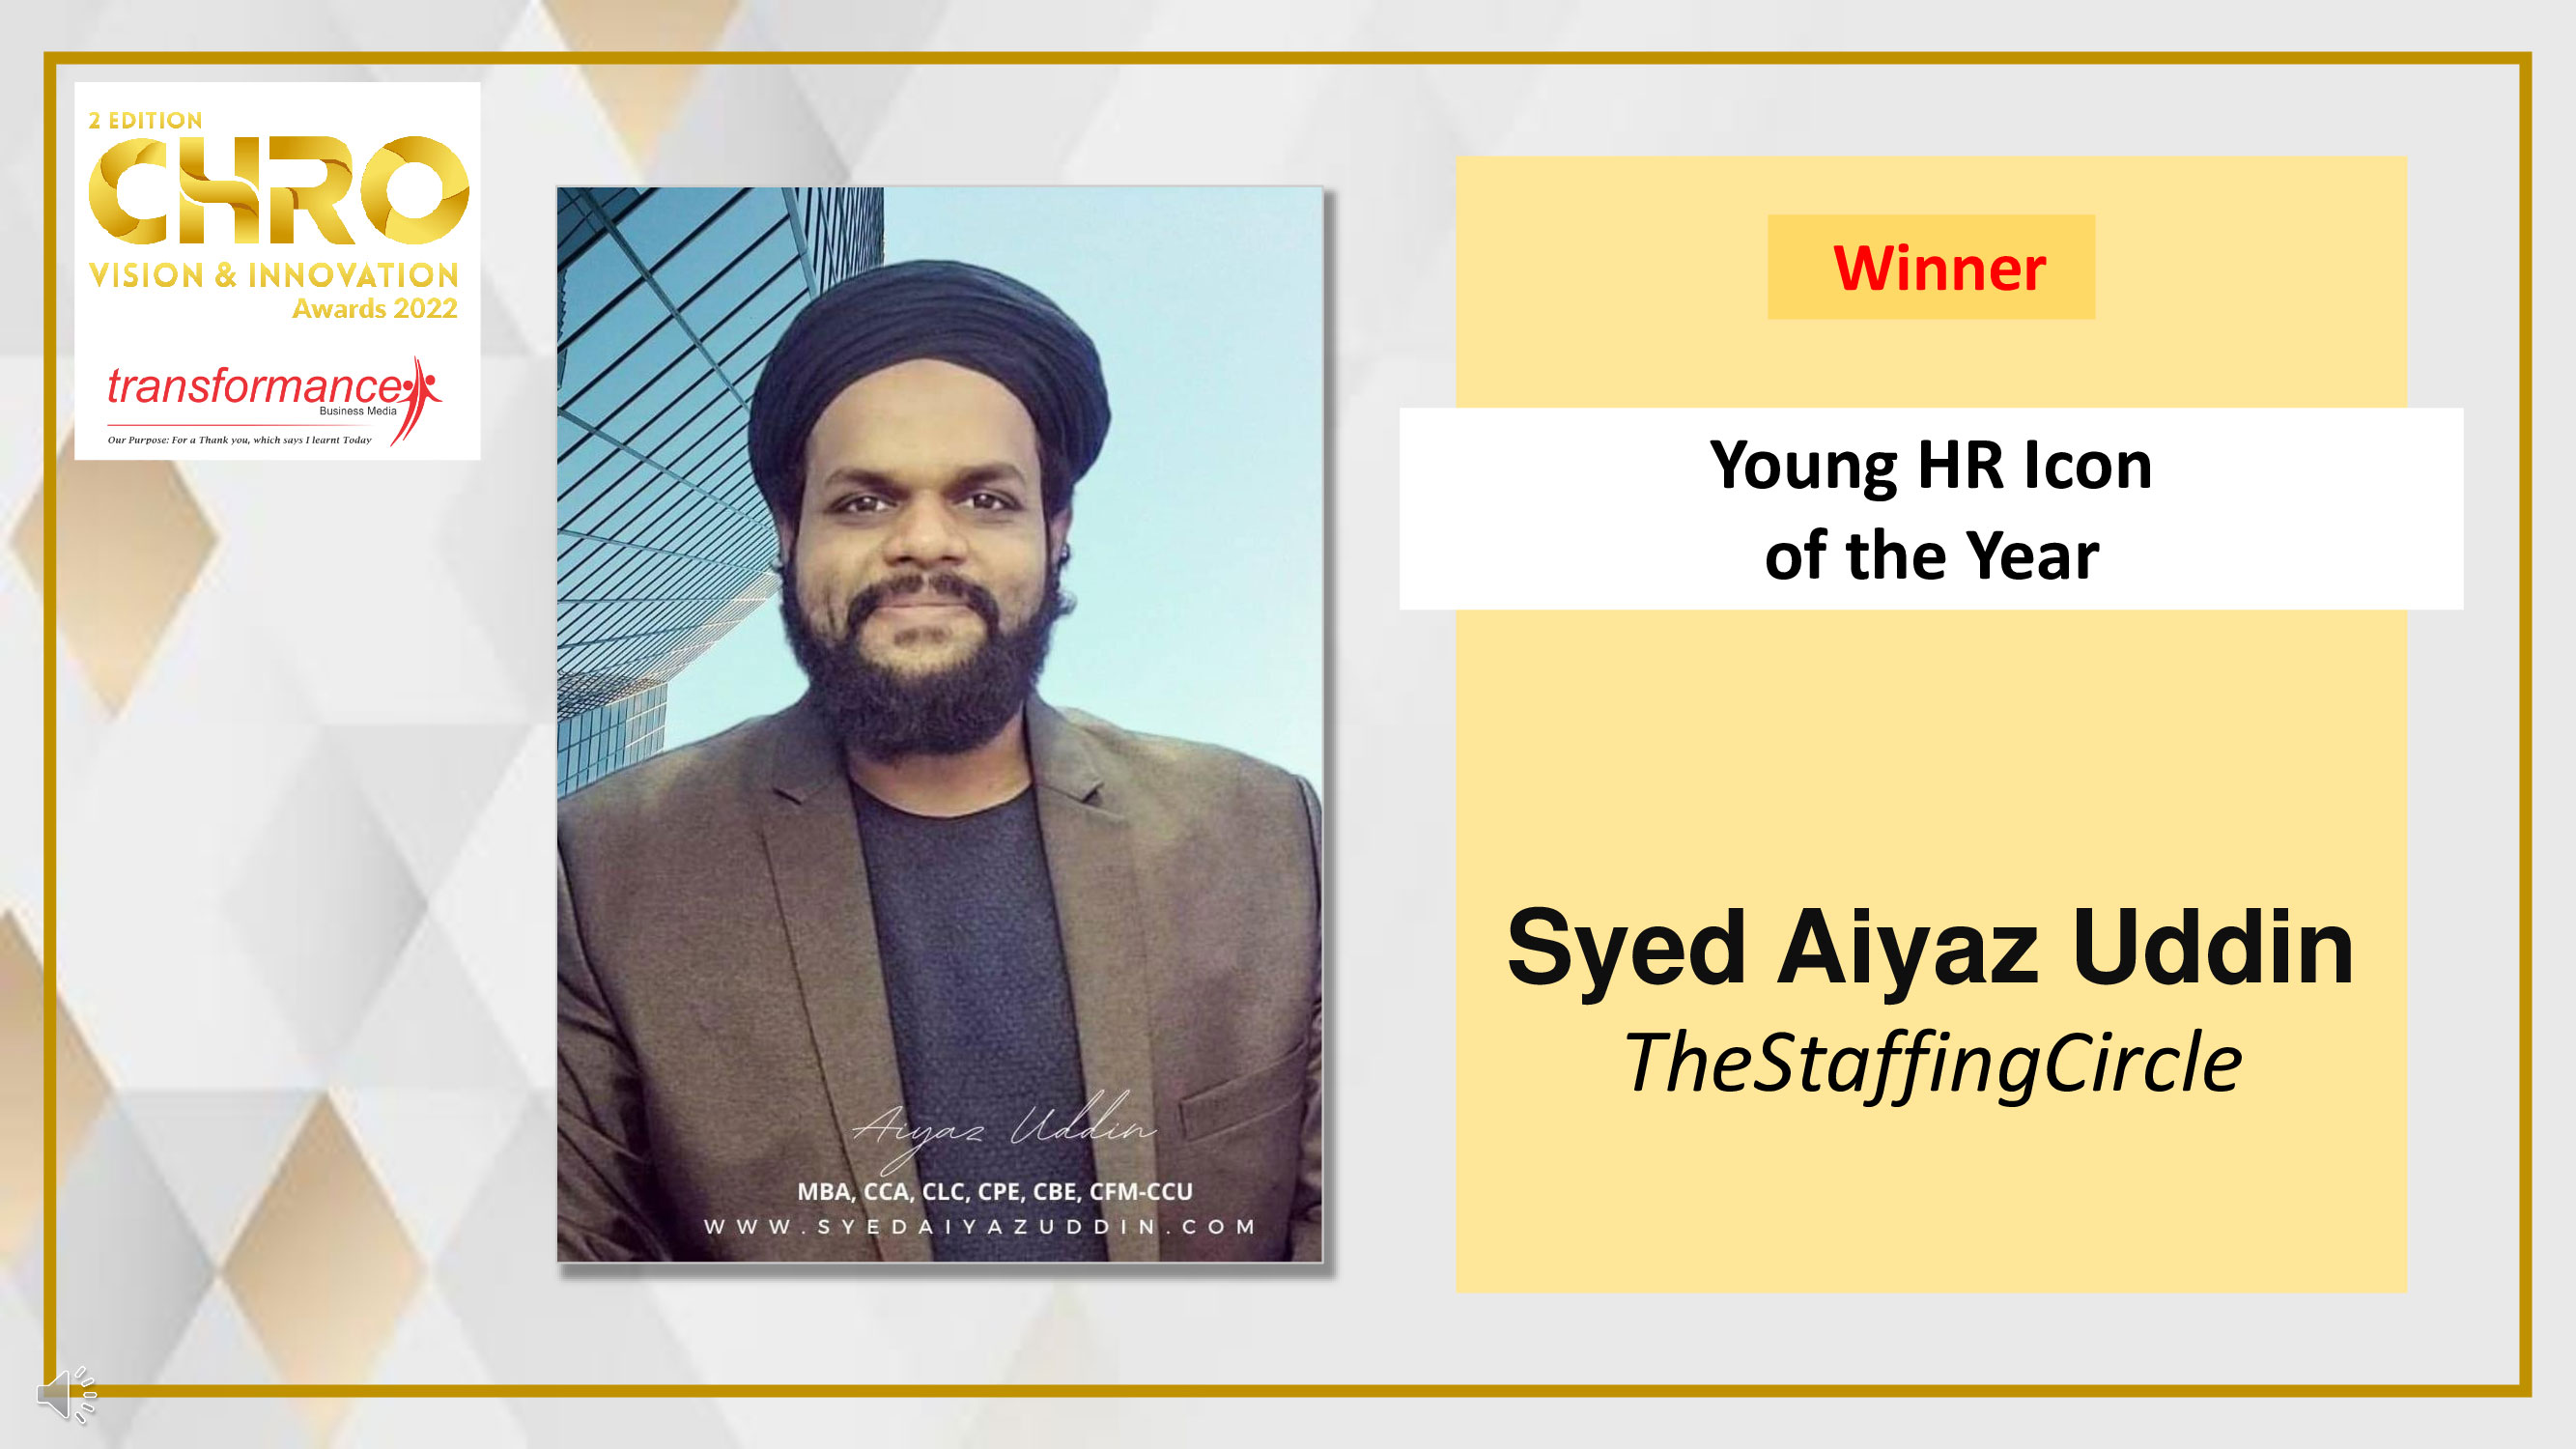 Syed Aiyaz Uddin, TheStaffingCircle